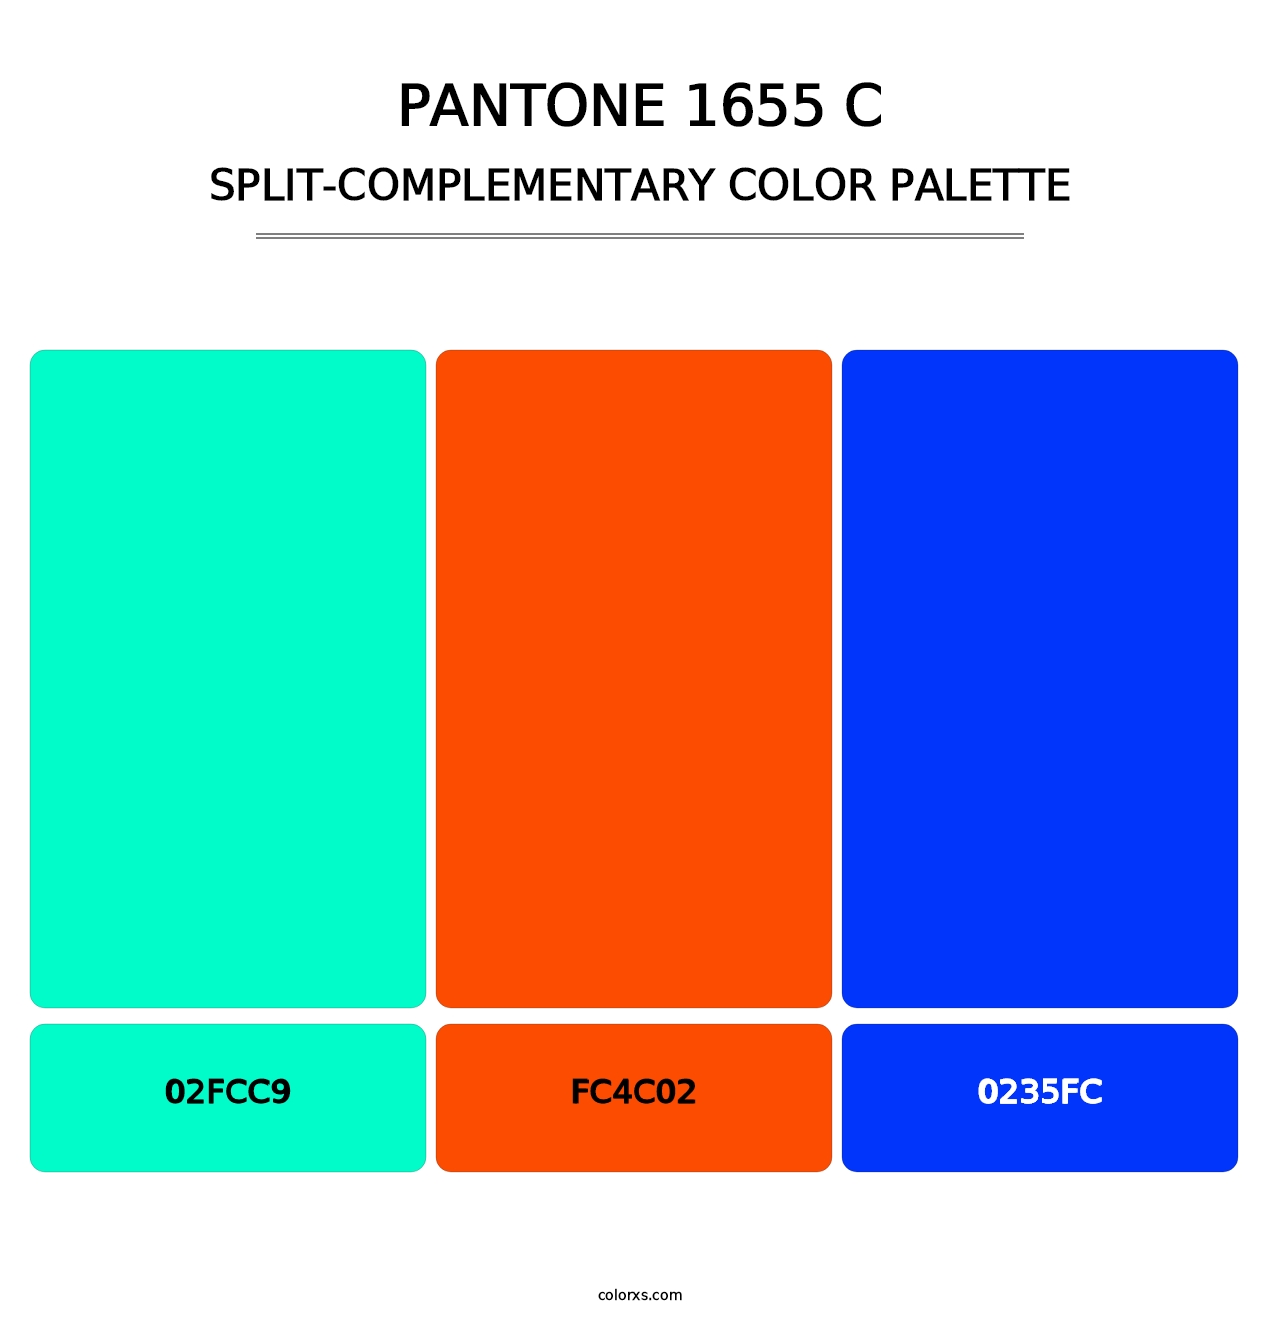 PANTONE 1655 C - Split-Complementary Color Palette